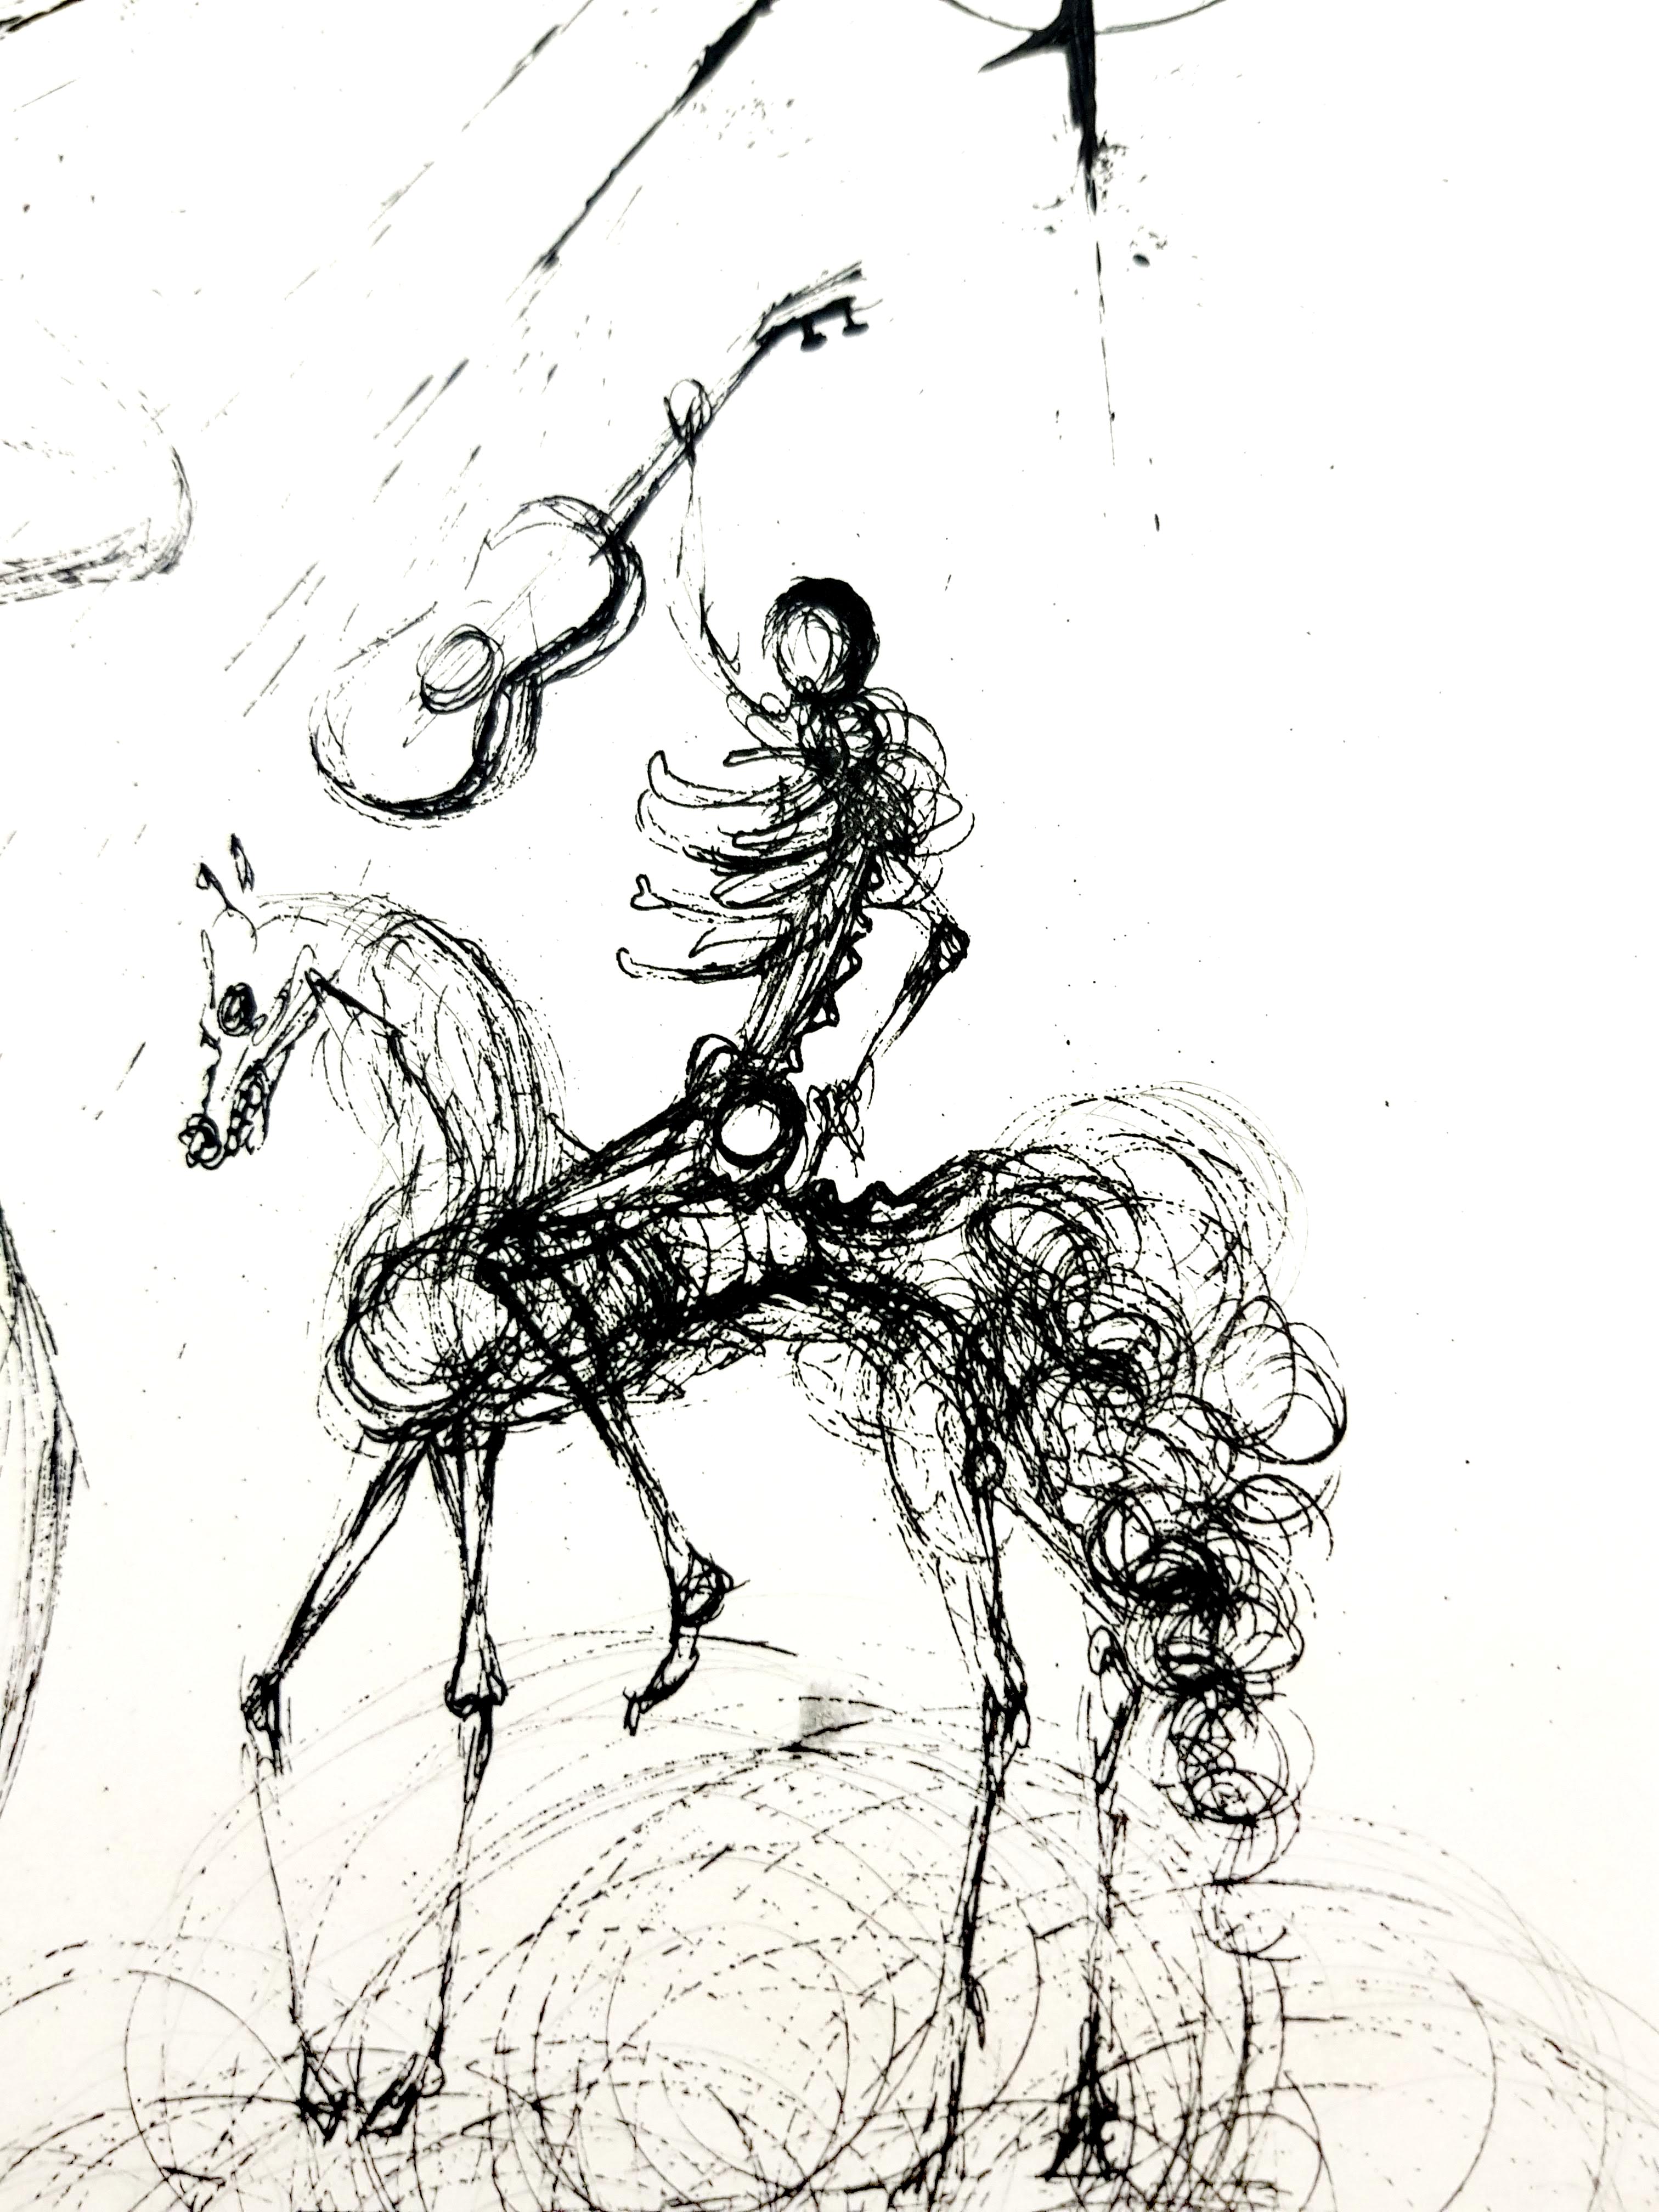 Salvador Dali - Nu, cheval et mort - Gravure originale
Dimensions : 38 x 28 cm
Edition : 235
1967
signature en relief
Sur Vélin d'Arches
Références : Champ 67-10 (p. 34-35)